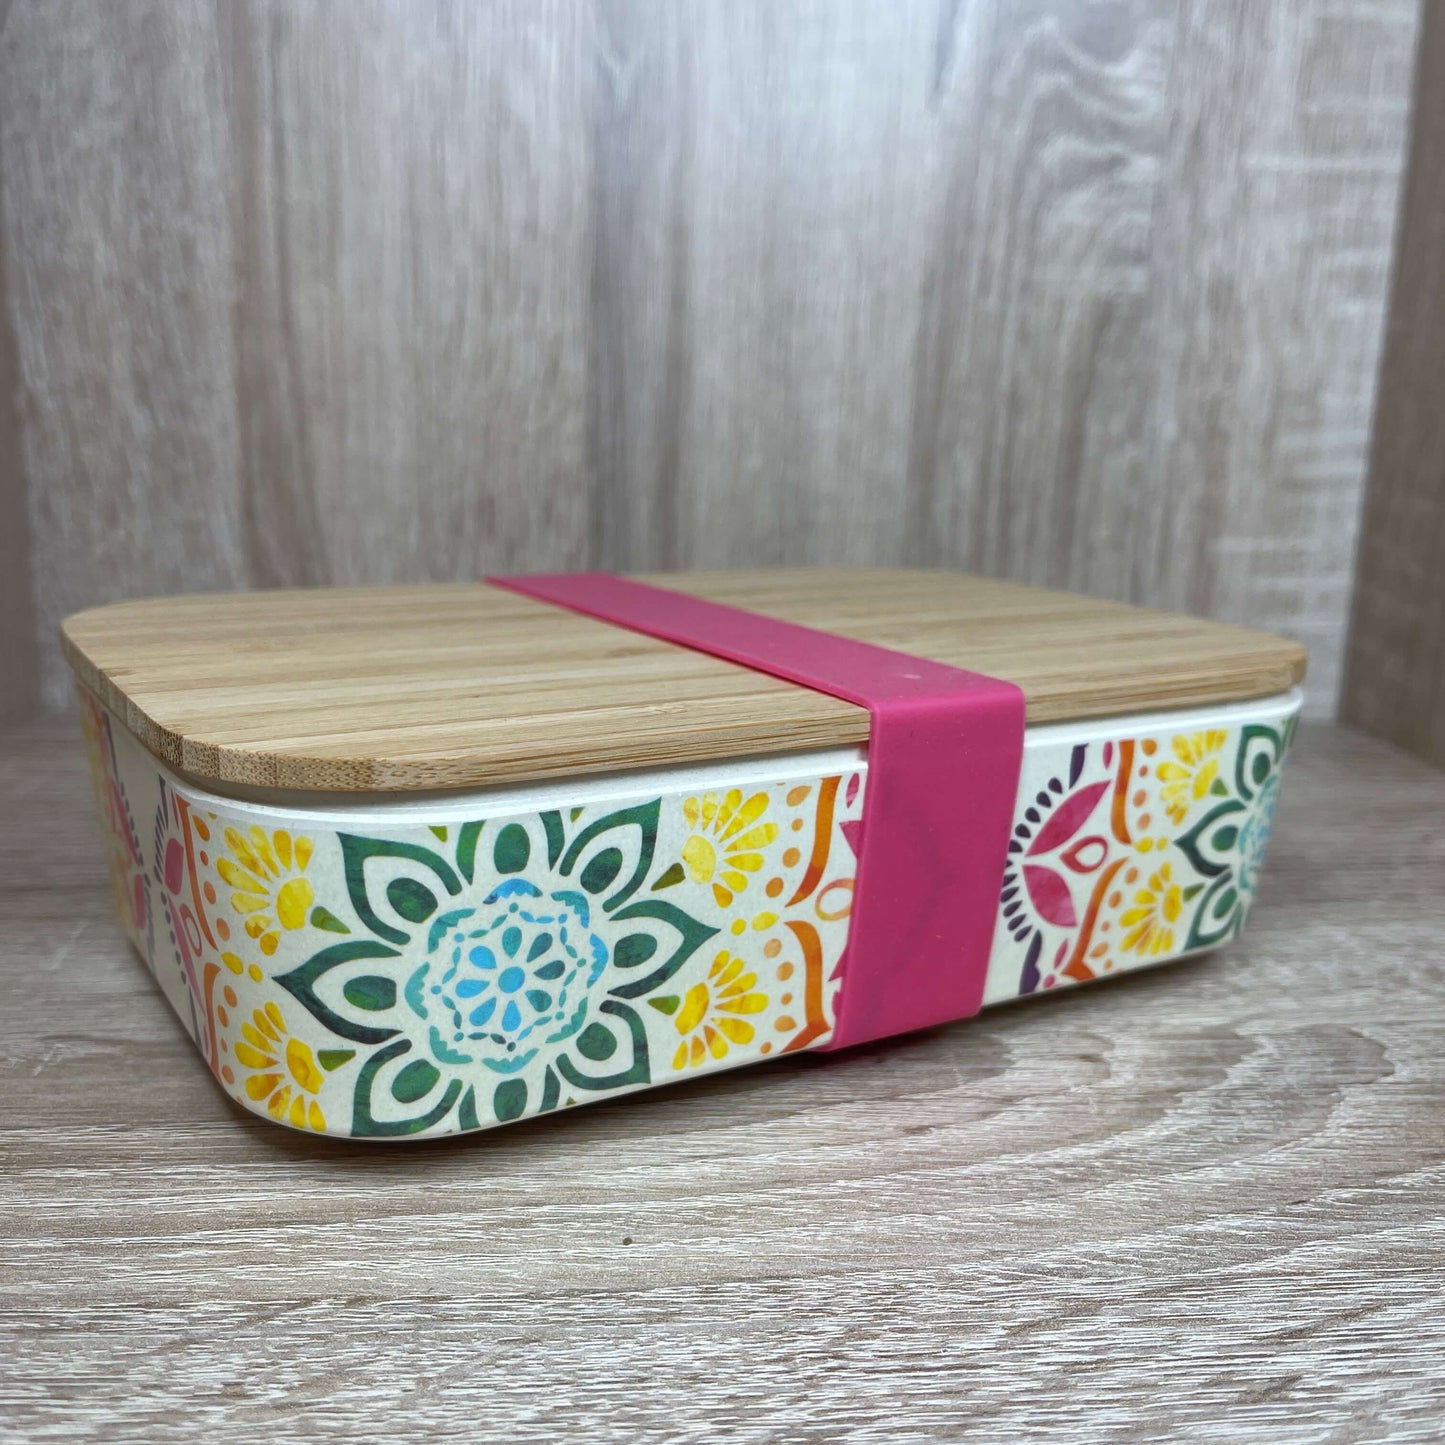 Bamboo Mandala lunch box.